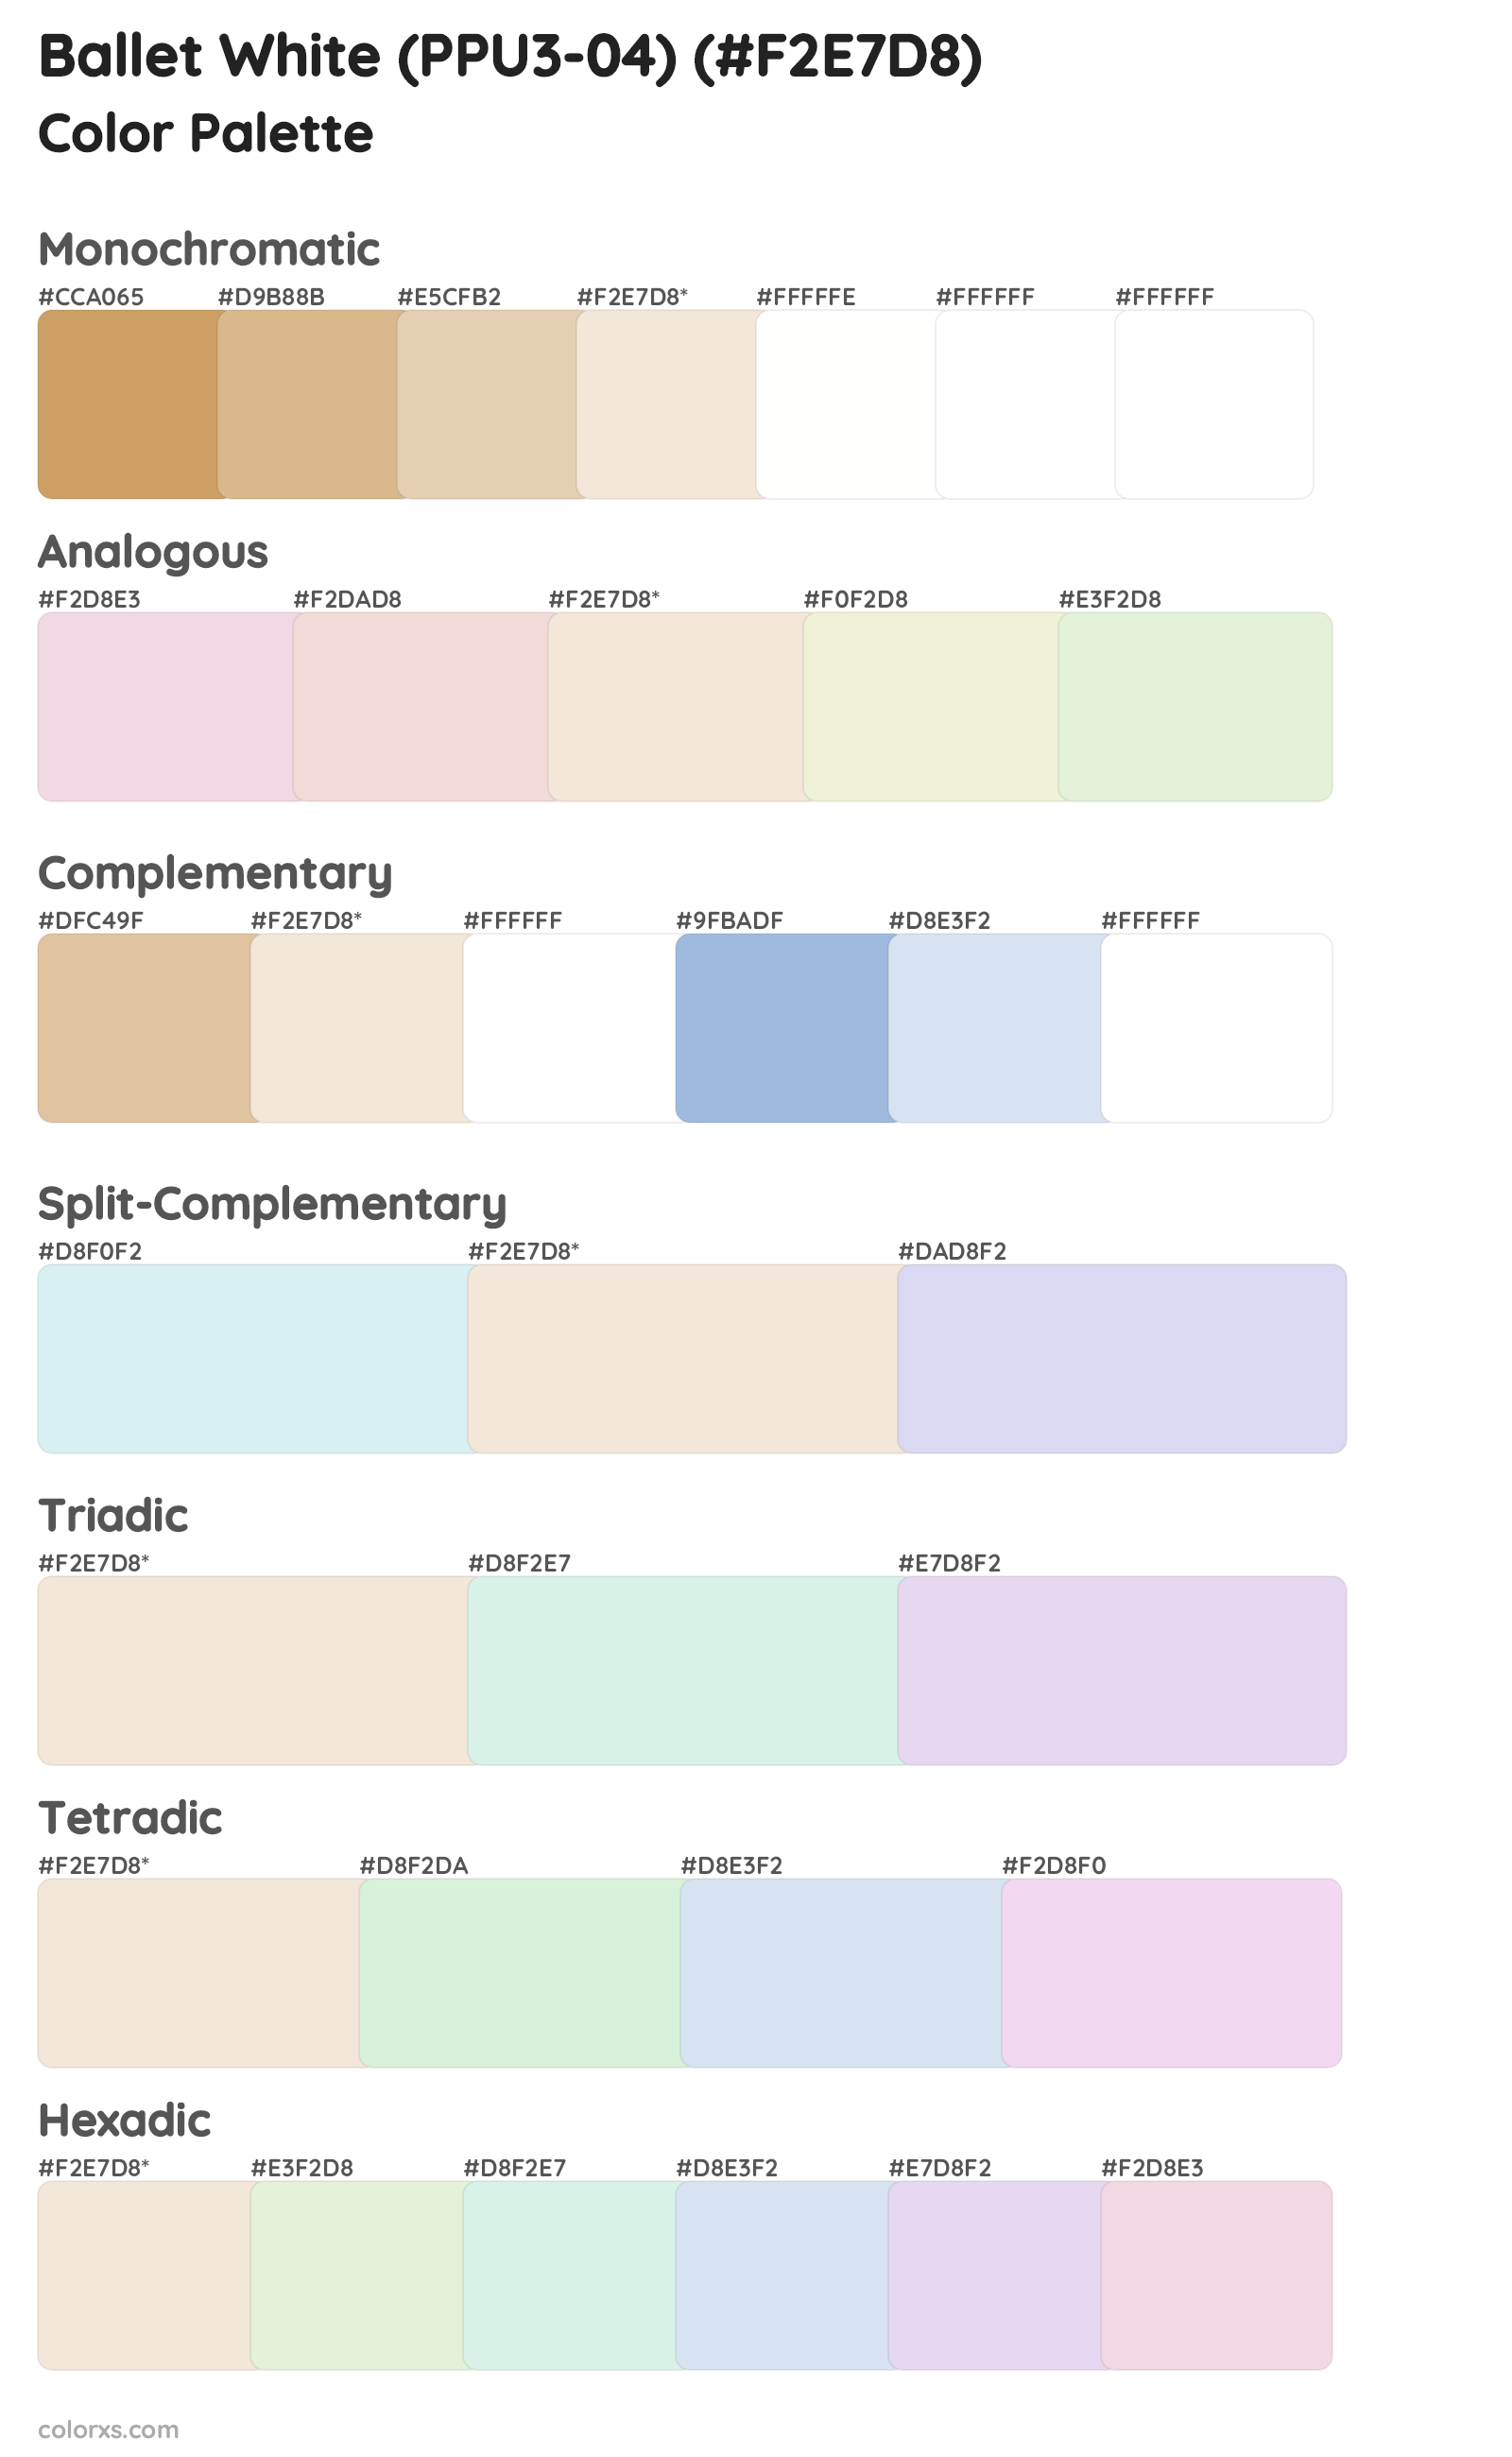 Ballet White (PPU3-04) Color Scheme Palettes